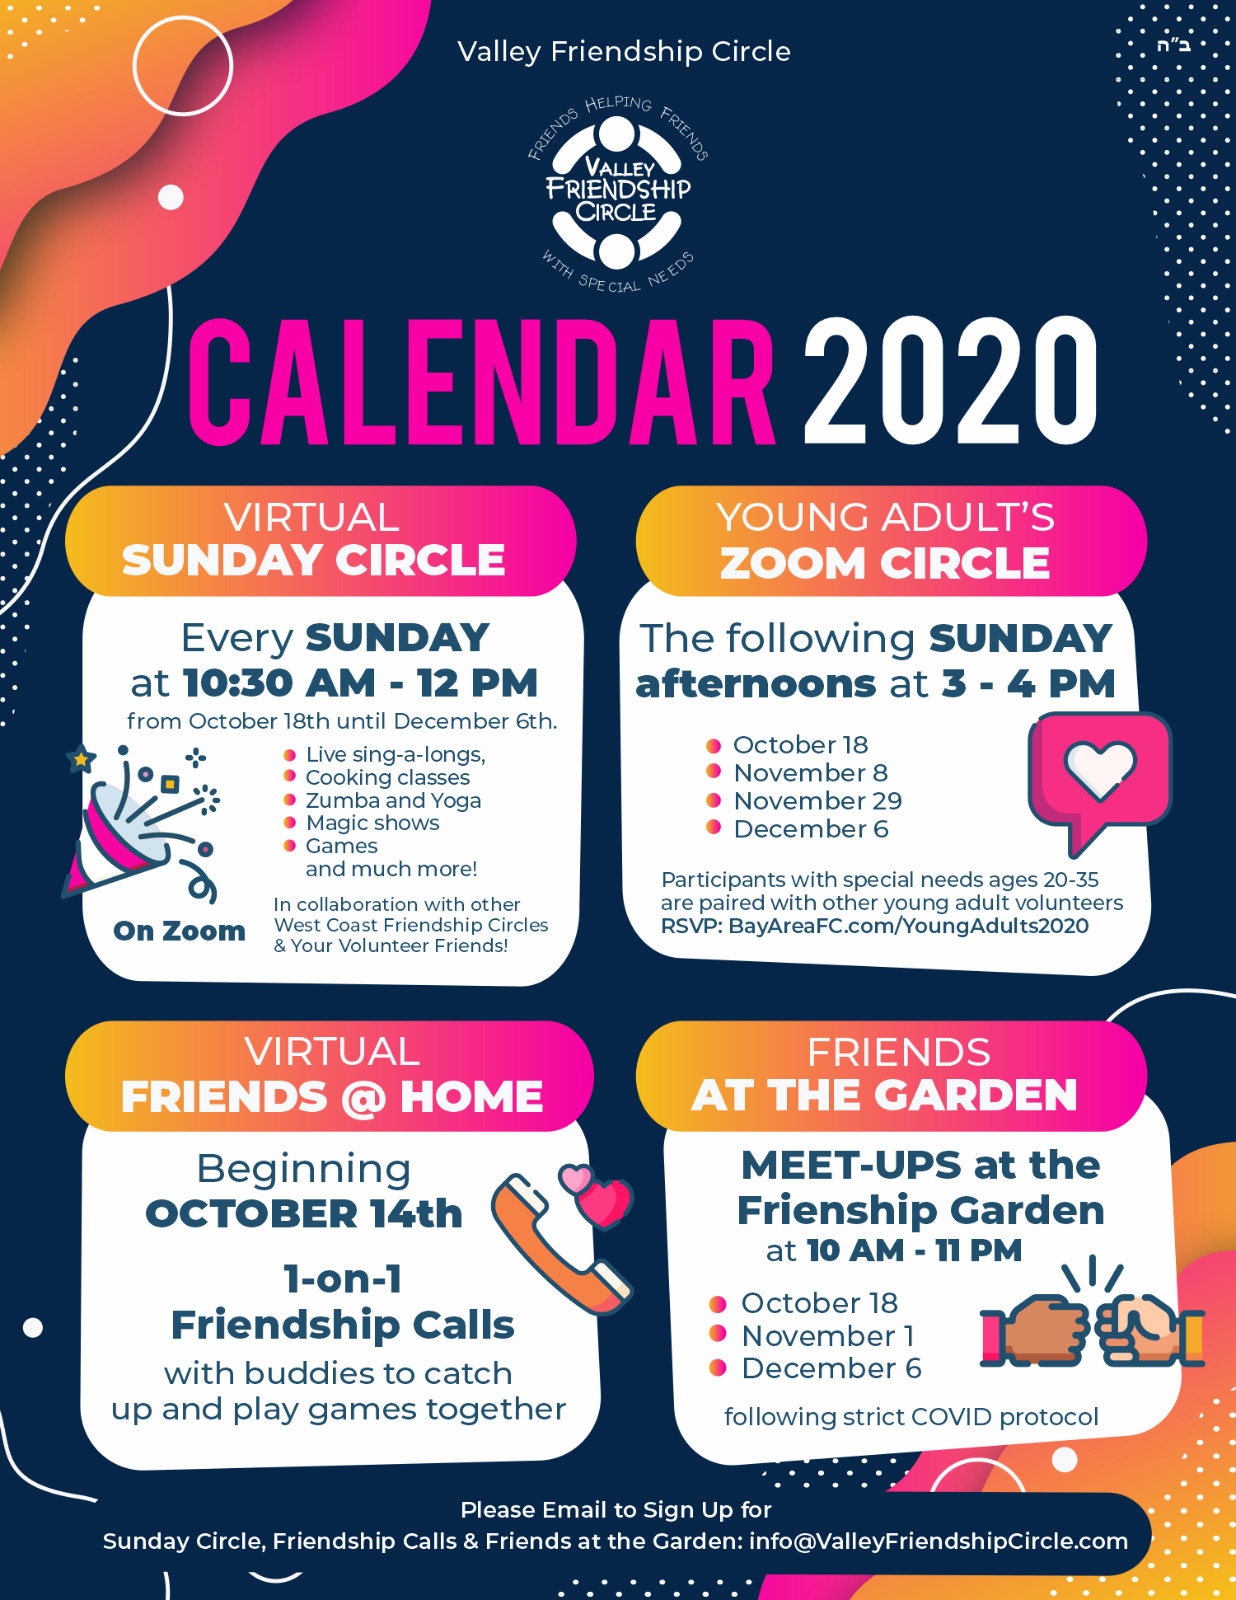 2020 Schedule